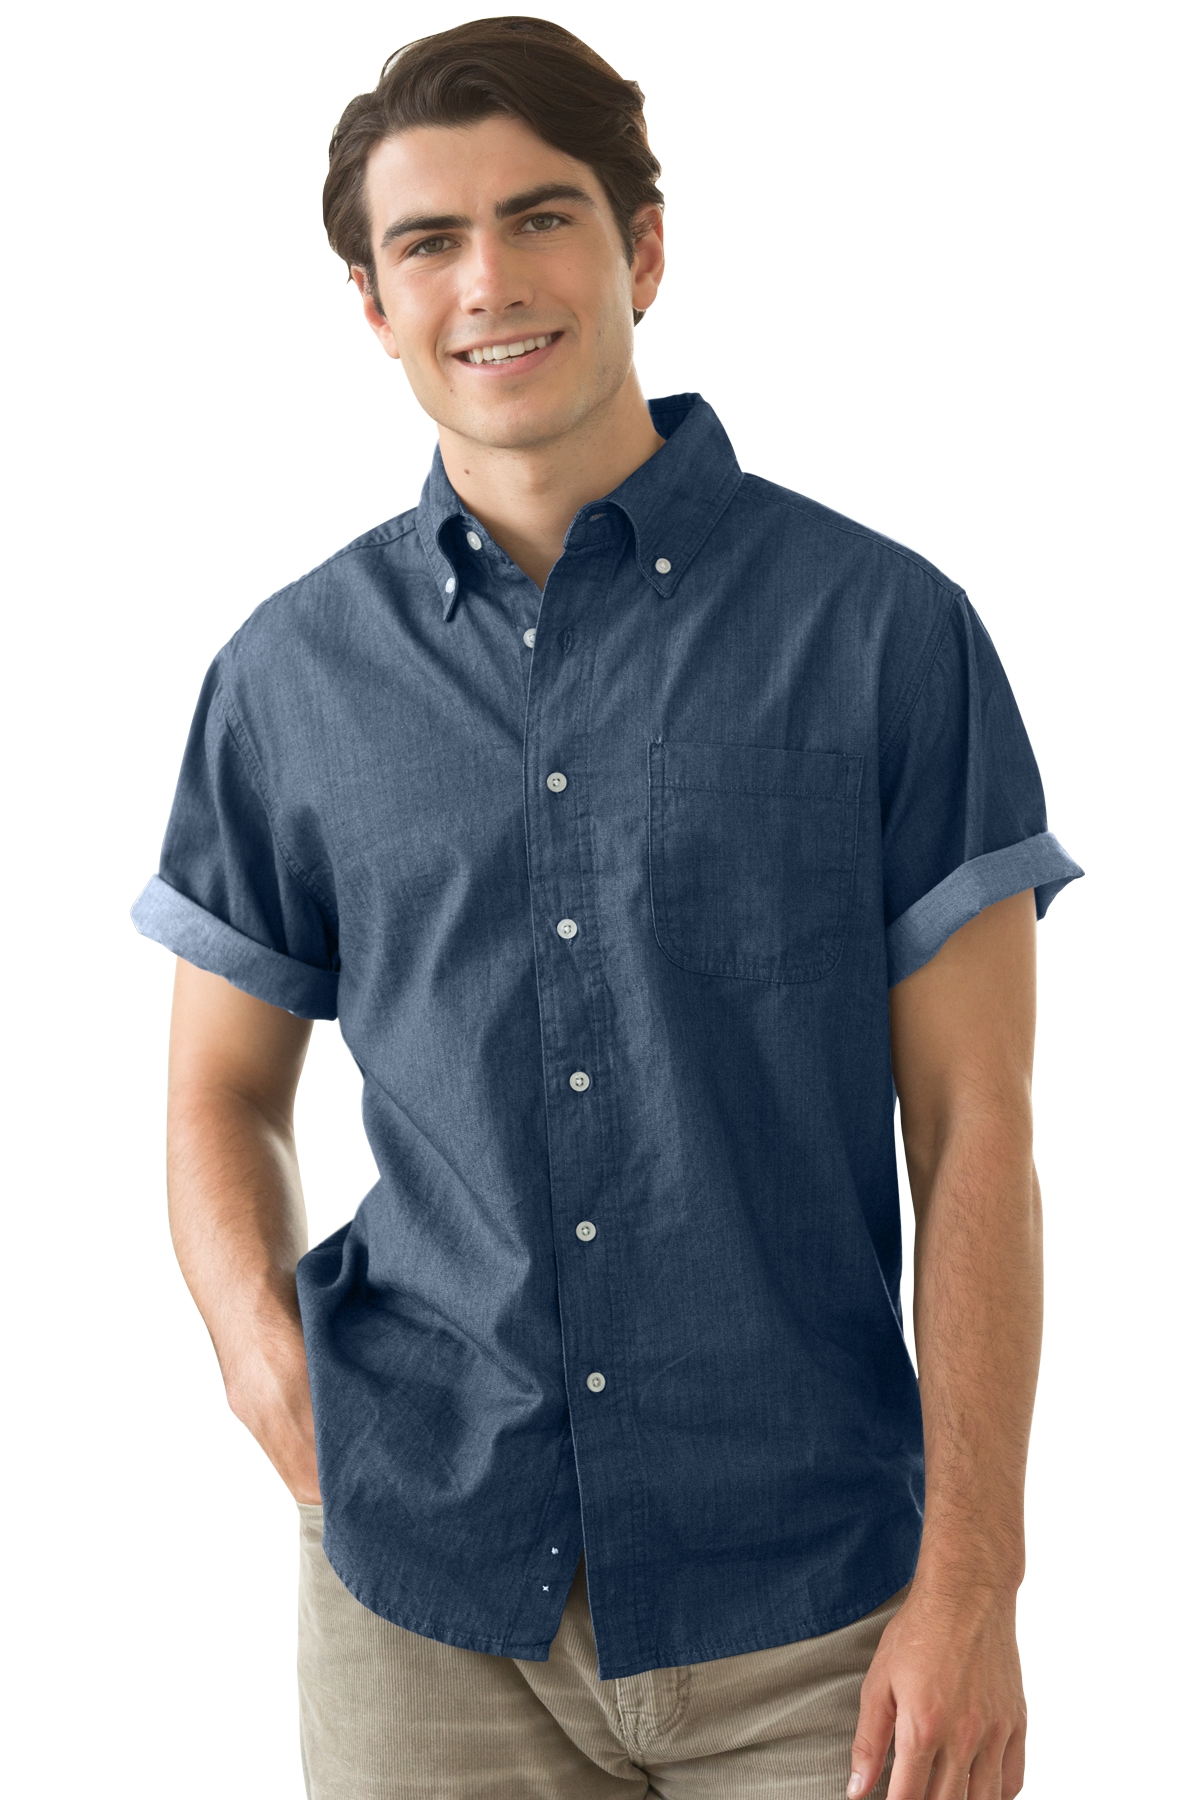 blue denim shirt short sleeve